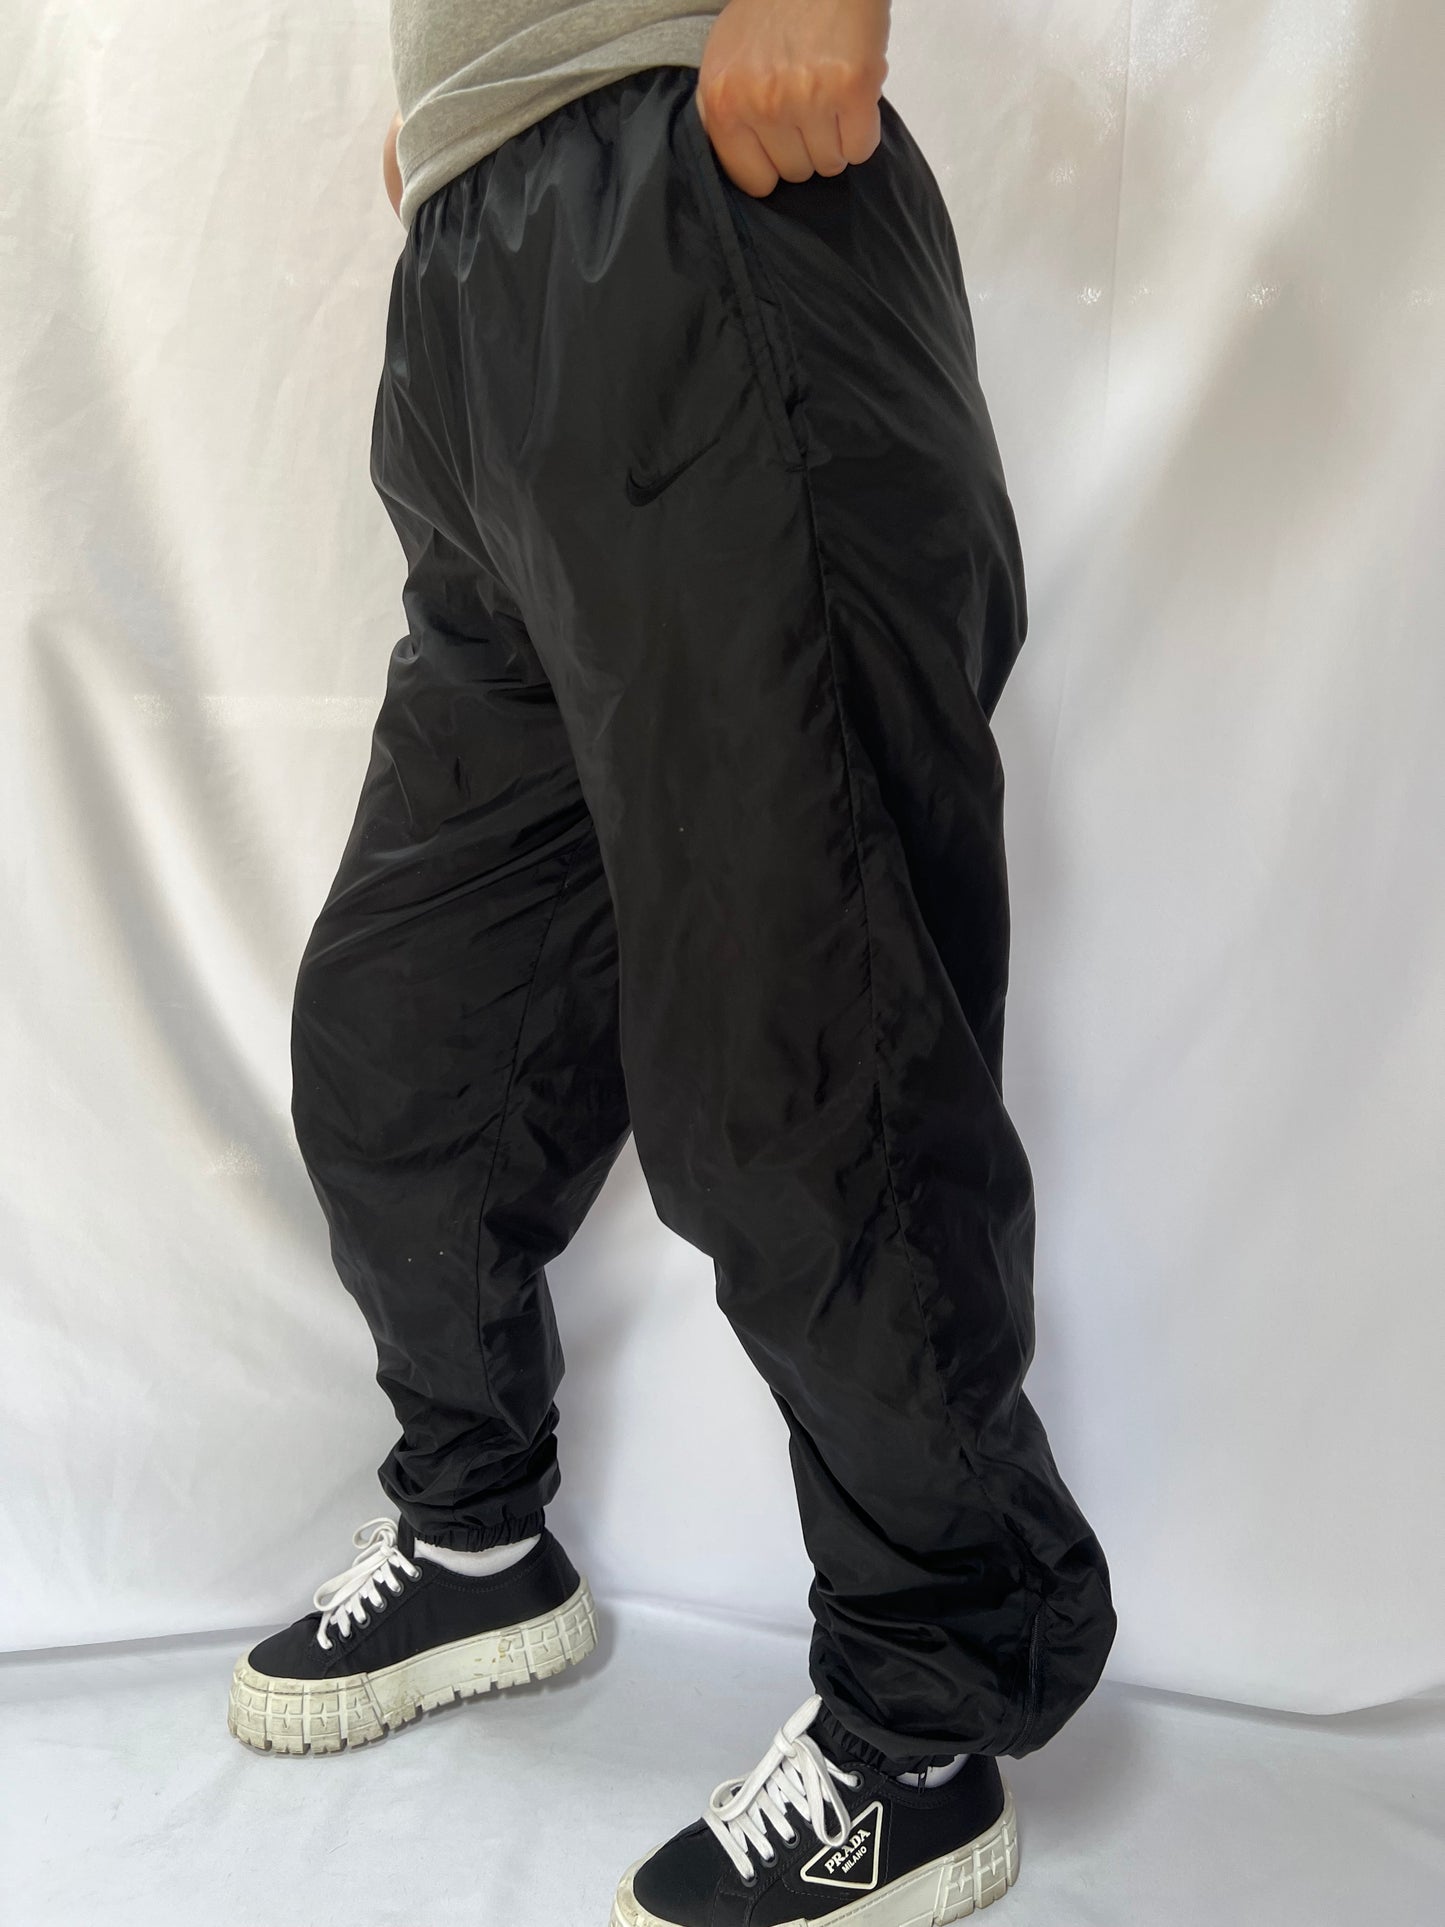 90's Nike Black Nylon Pants - M